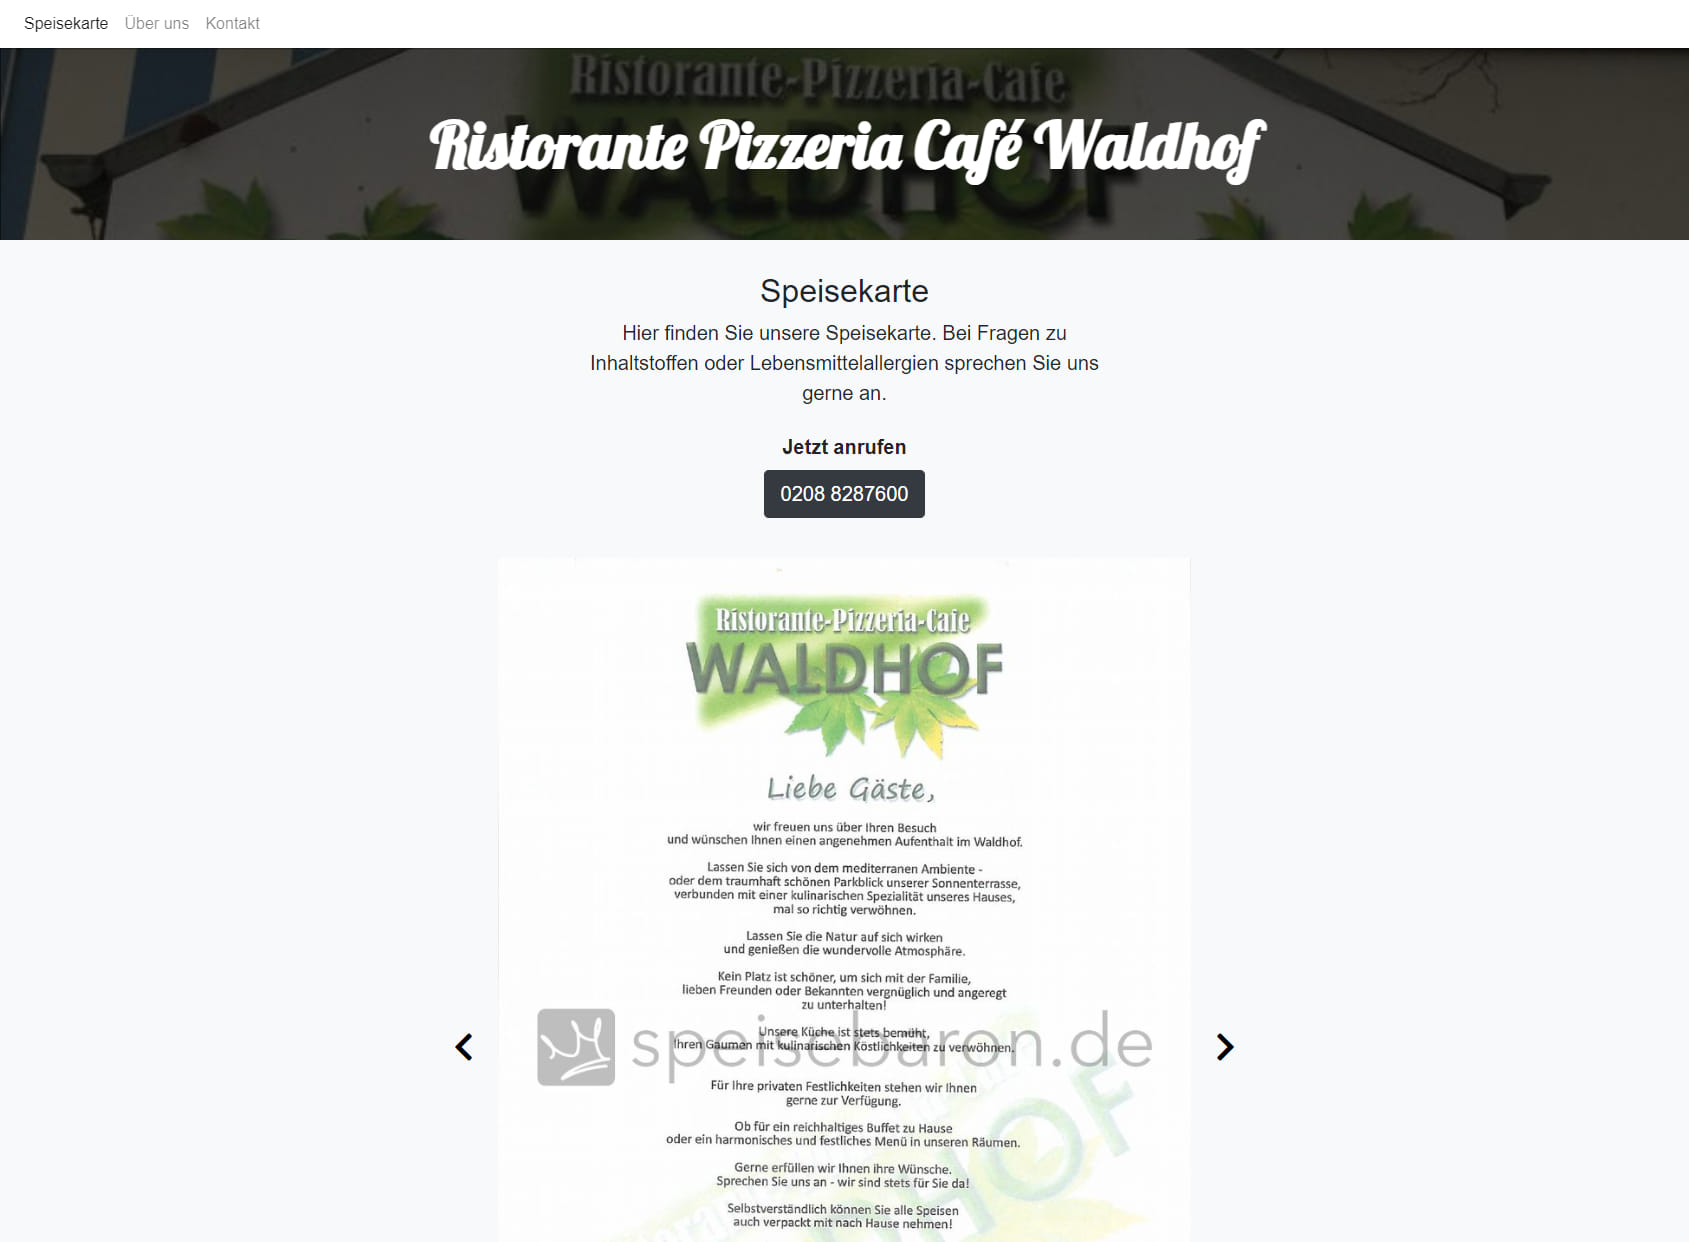 Ristorante Pizzeria Café Waldhof